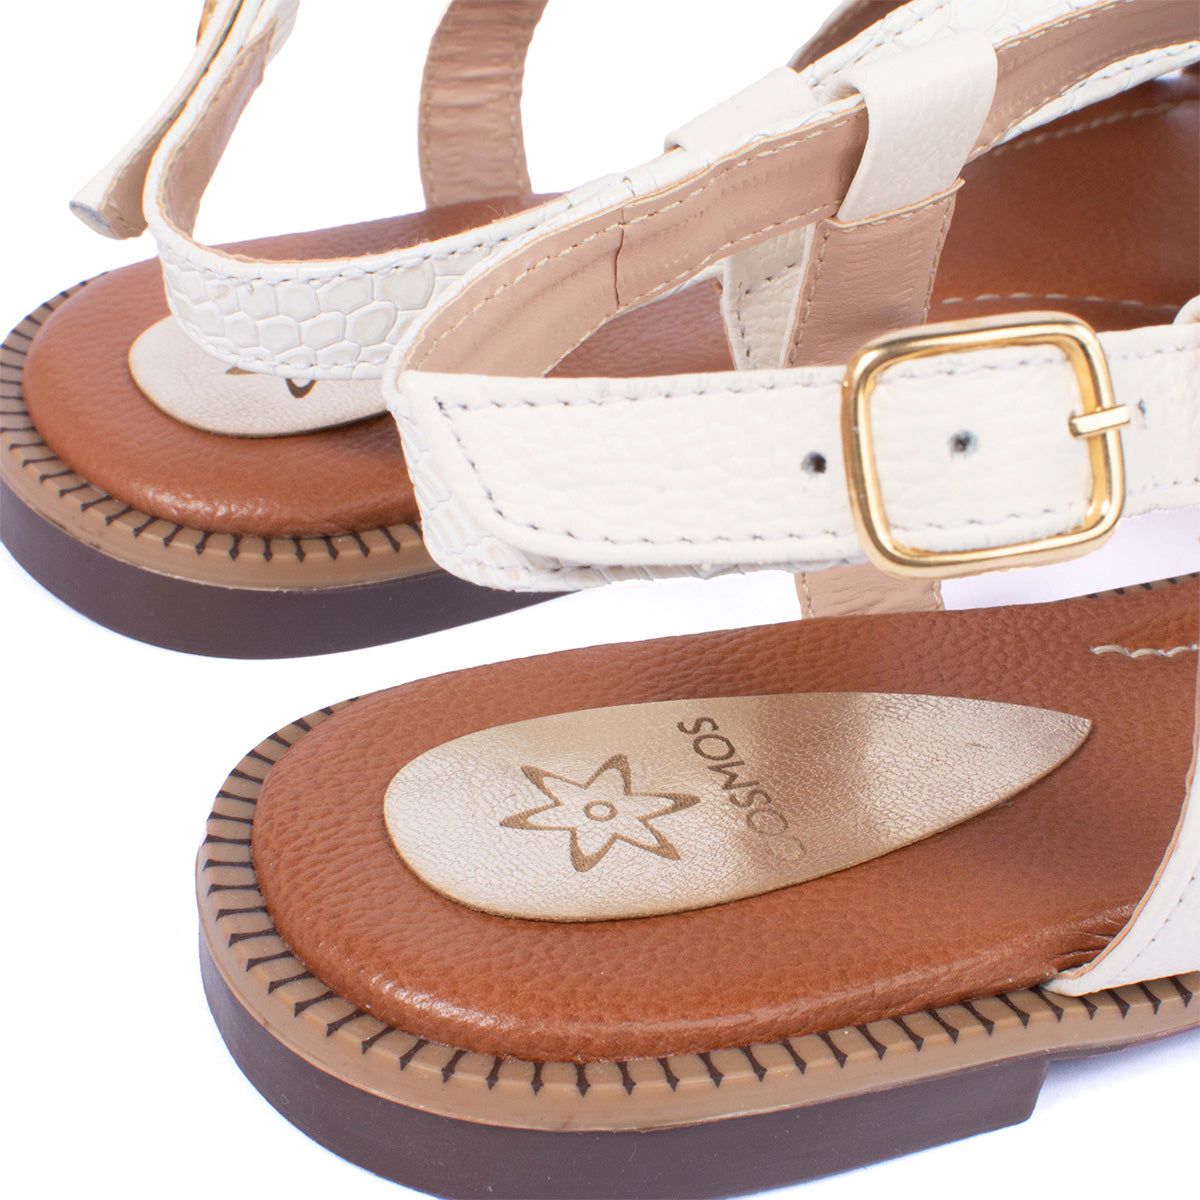 Sandalias planas en cuero color talco con correas cruzadas y textura 104077